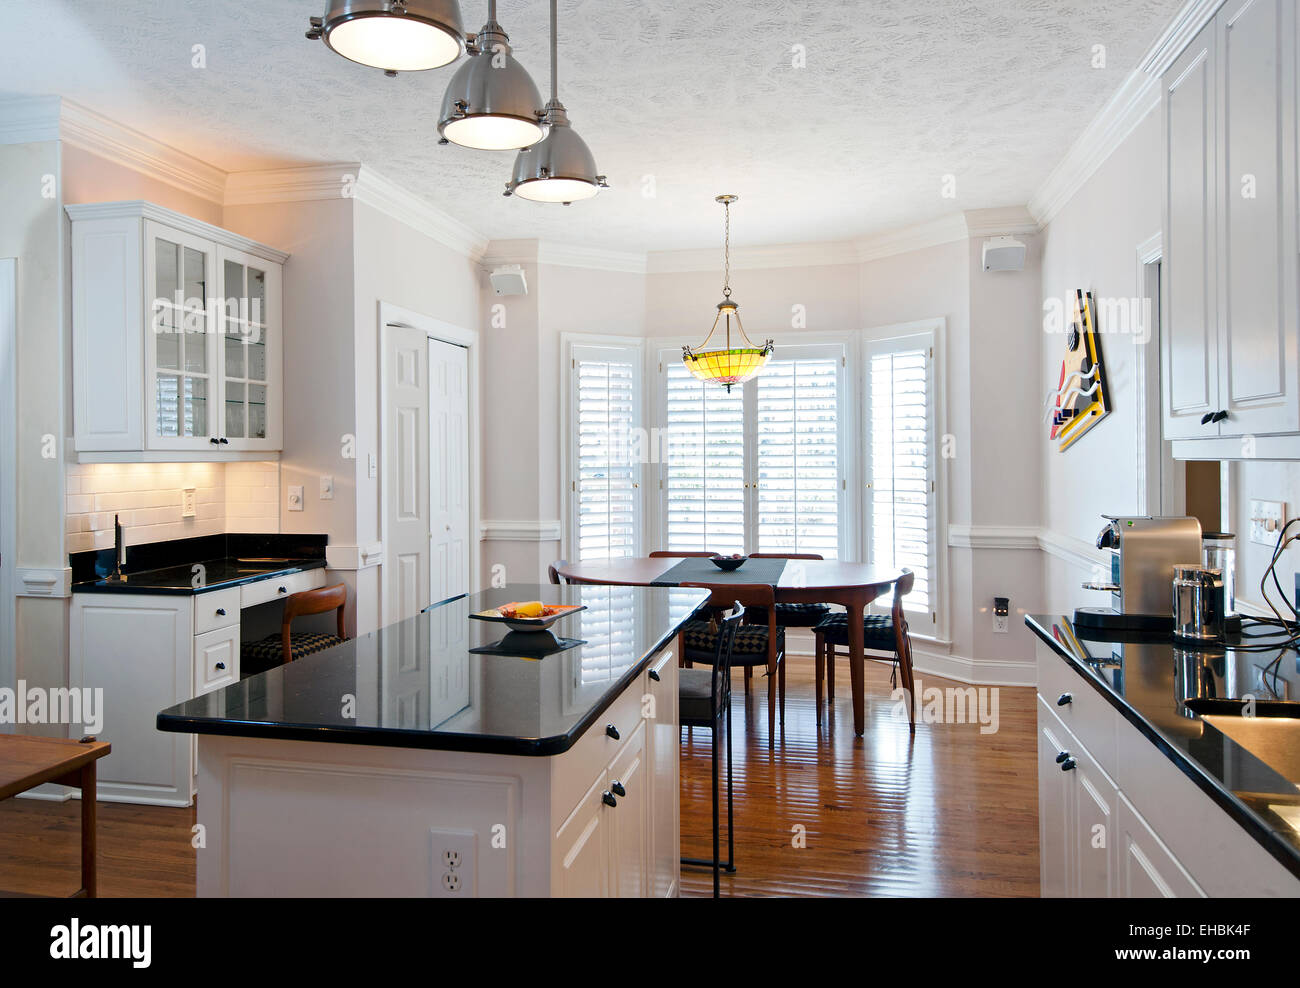 Residencial moderno amueblado cocina con isla central en una sola casa de familia Foto de stock